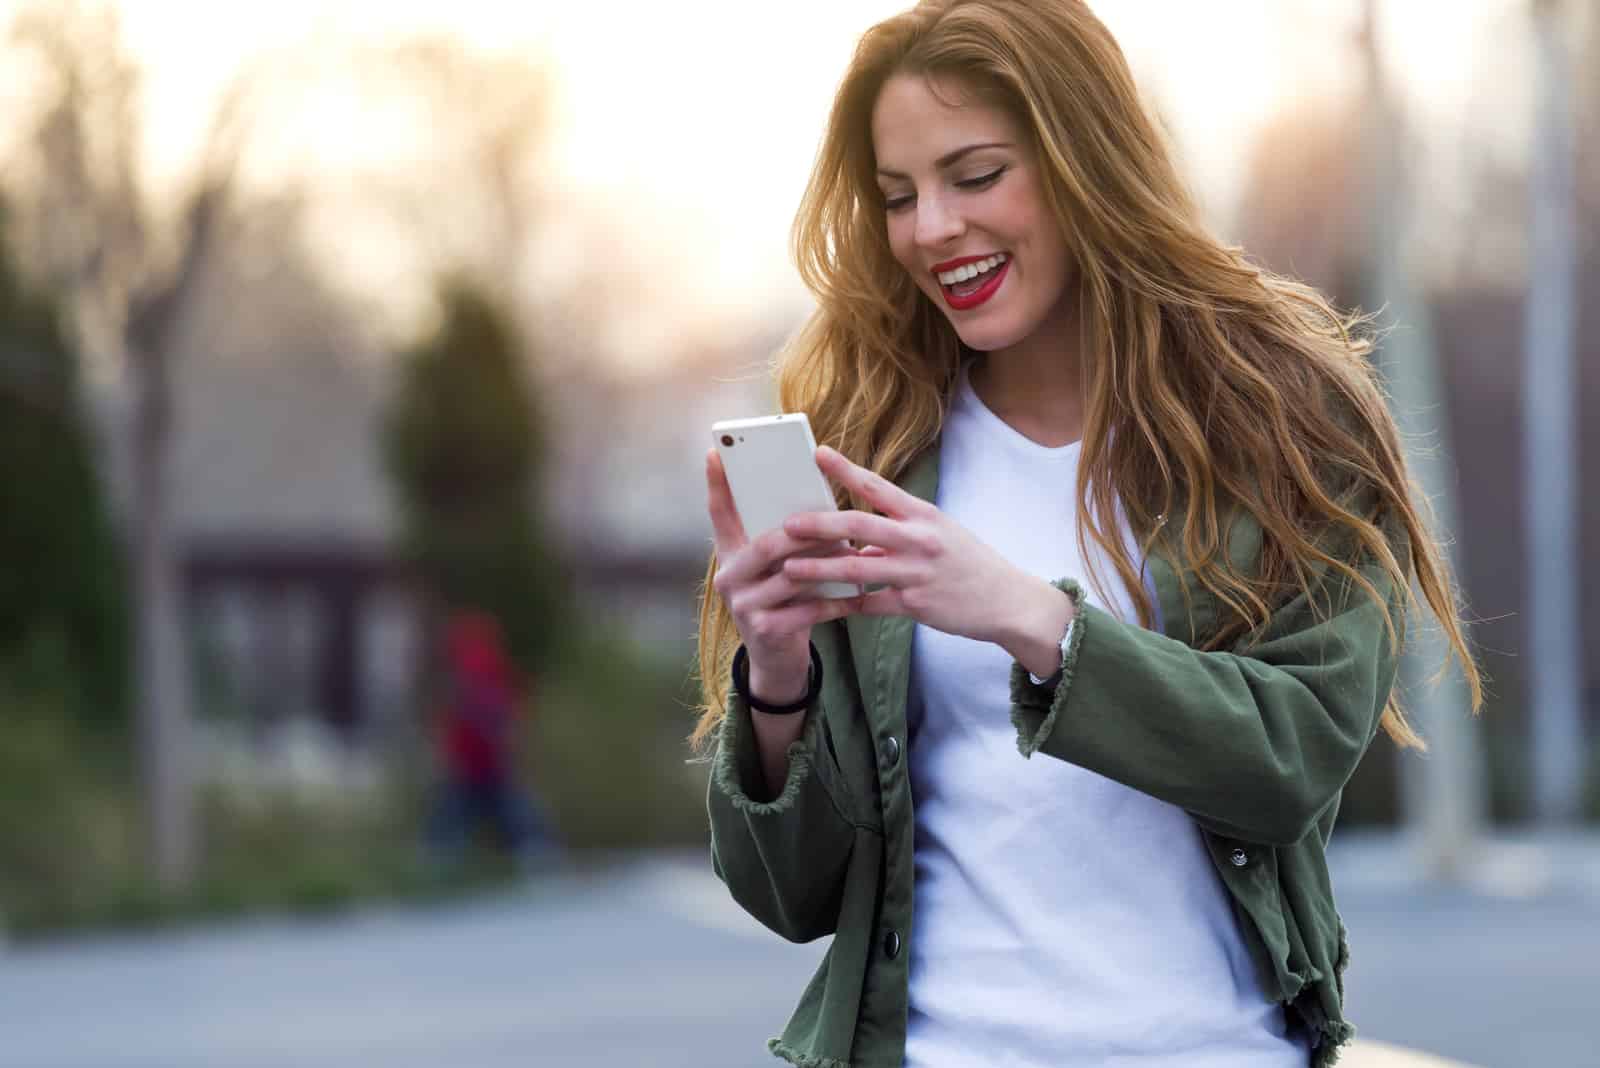 Une femme souriante aux longs cheveux bruns se dresse dans la rue avec un téléphone à la main